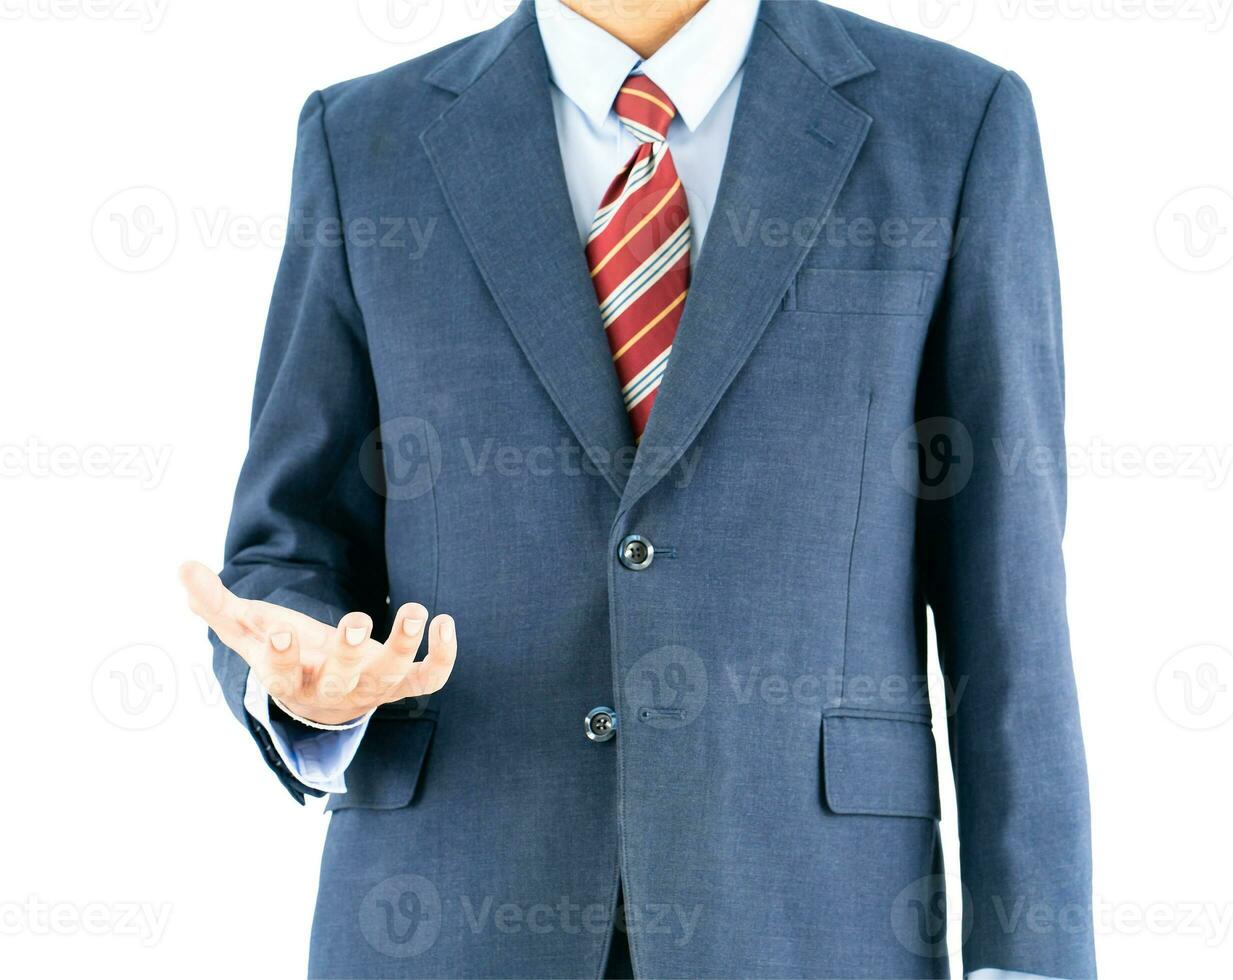 hombre vestido de azul en traje llegando a mano con trazado de recorte foto